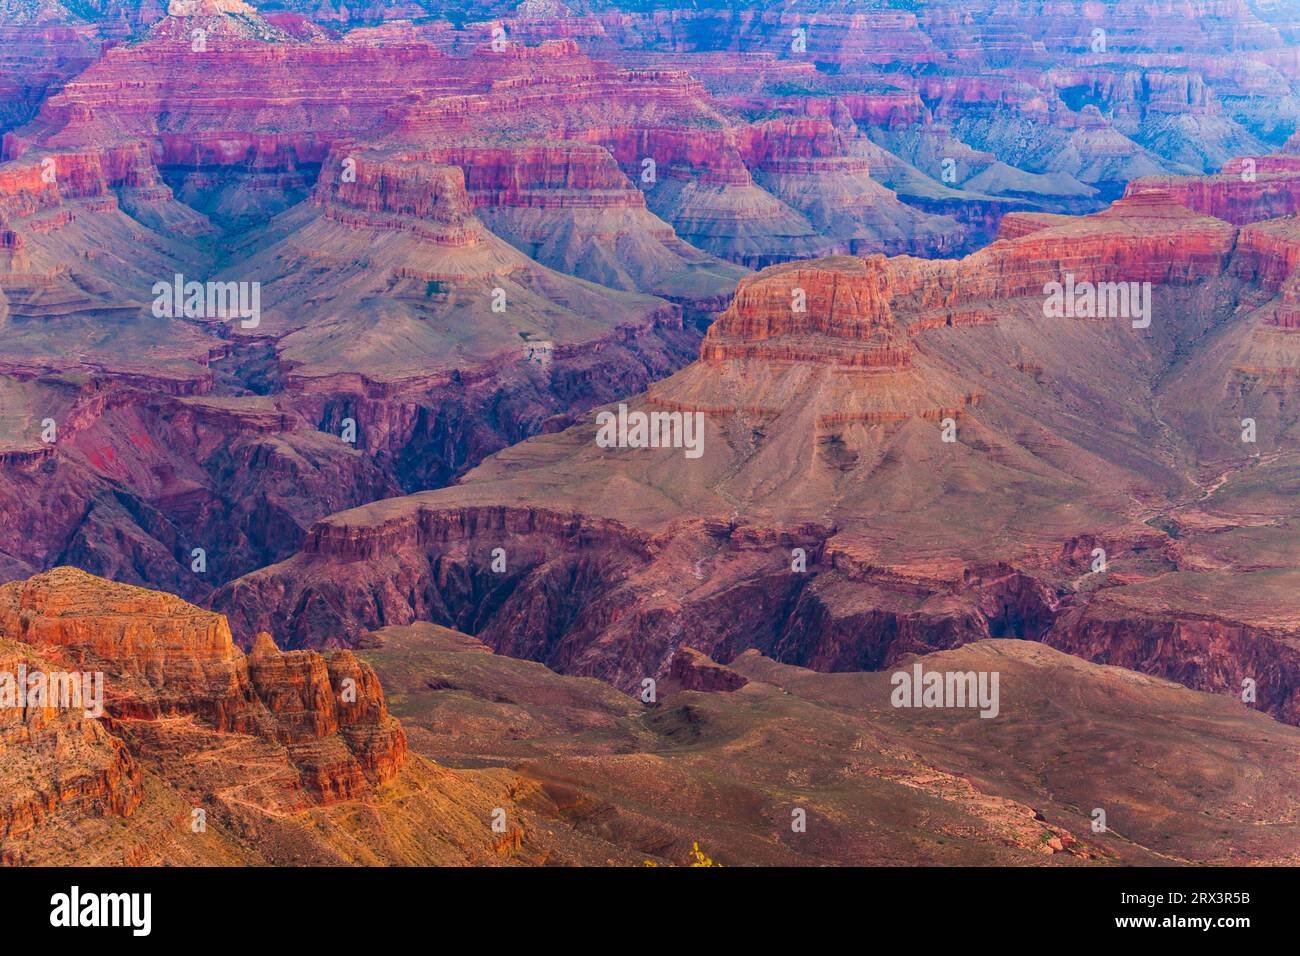 Amanecer en el borde sur del Parque Nacional del Gran Cañón en Arizona. El Gran Cañón es una maravilla geológica, con capas de roca como ventanas al pasado. Foto de stock